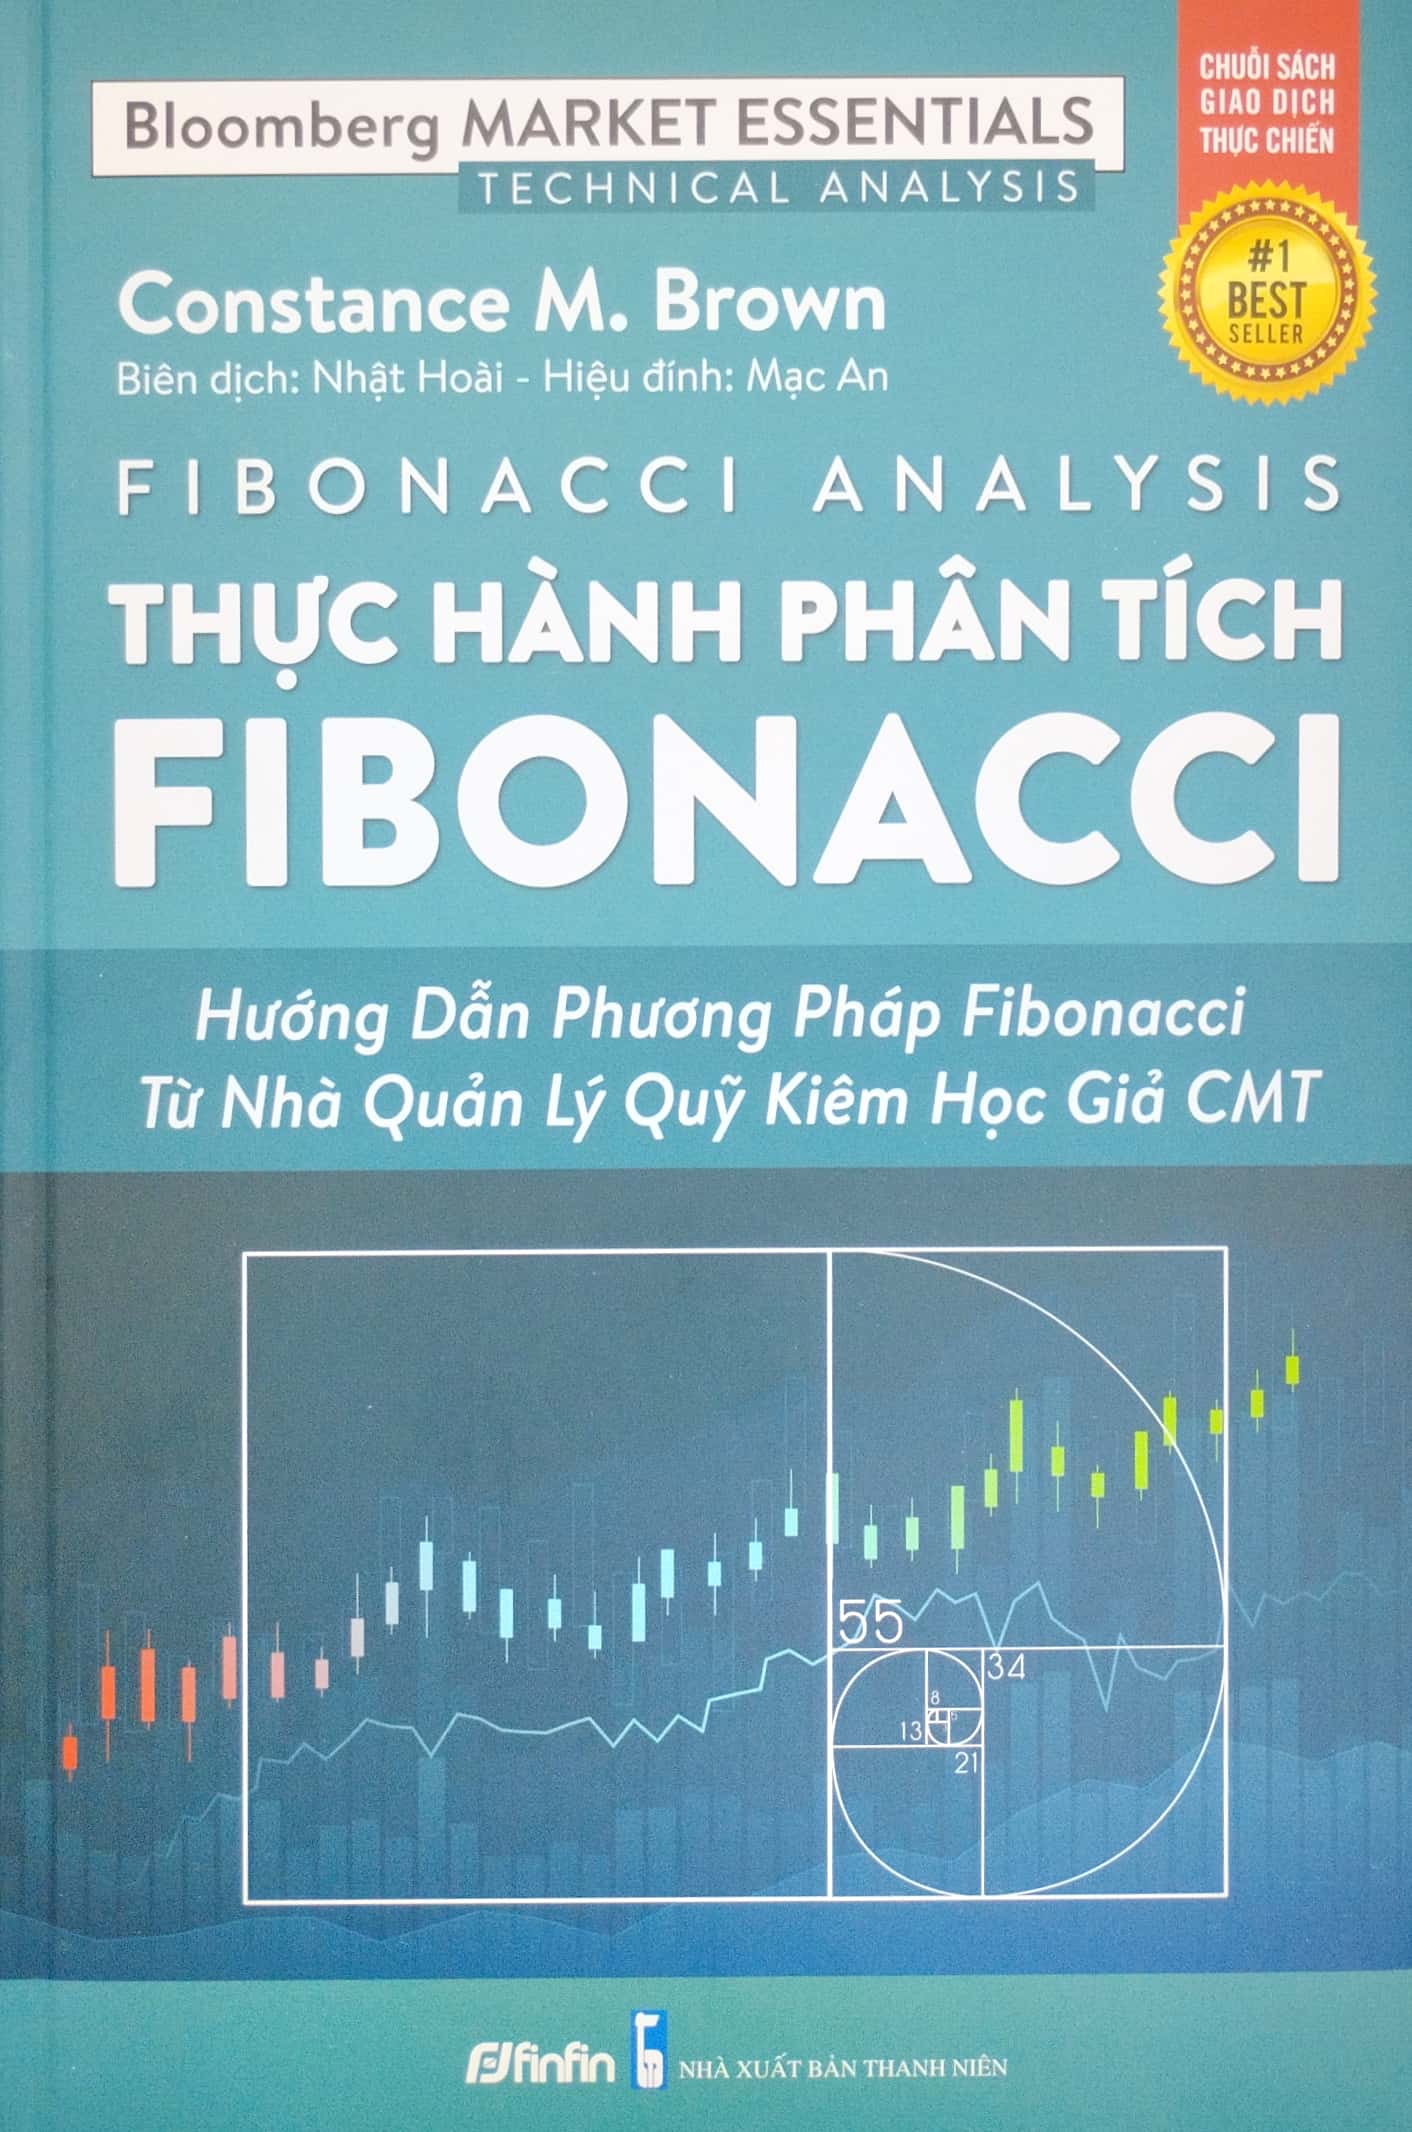 Fibonacci Analysis - Thực Hành Phân Tích Fibonacci PDF